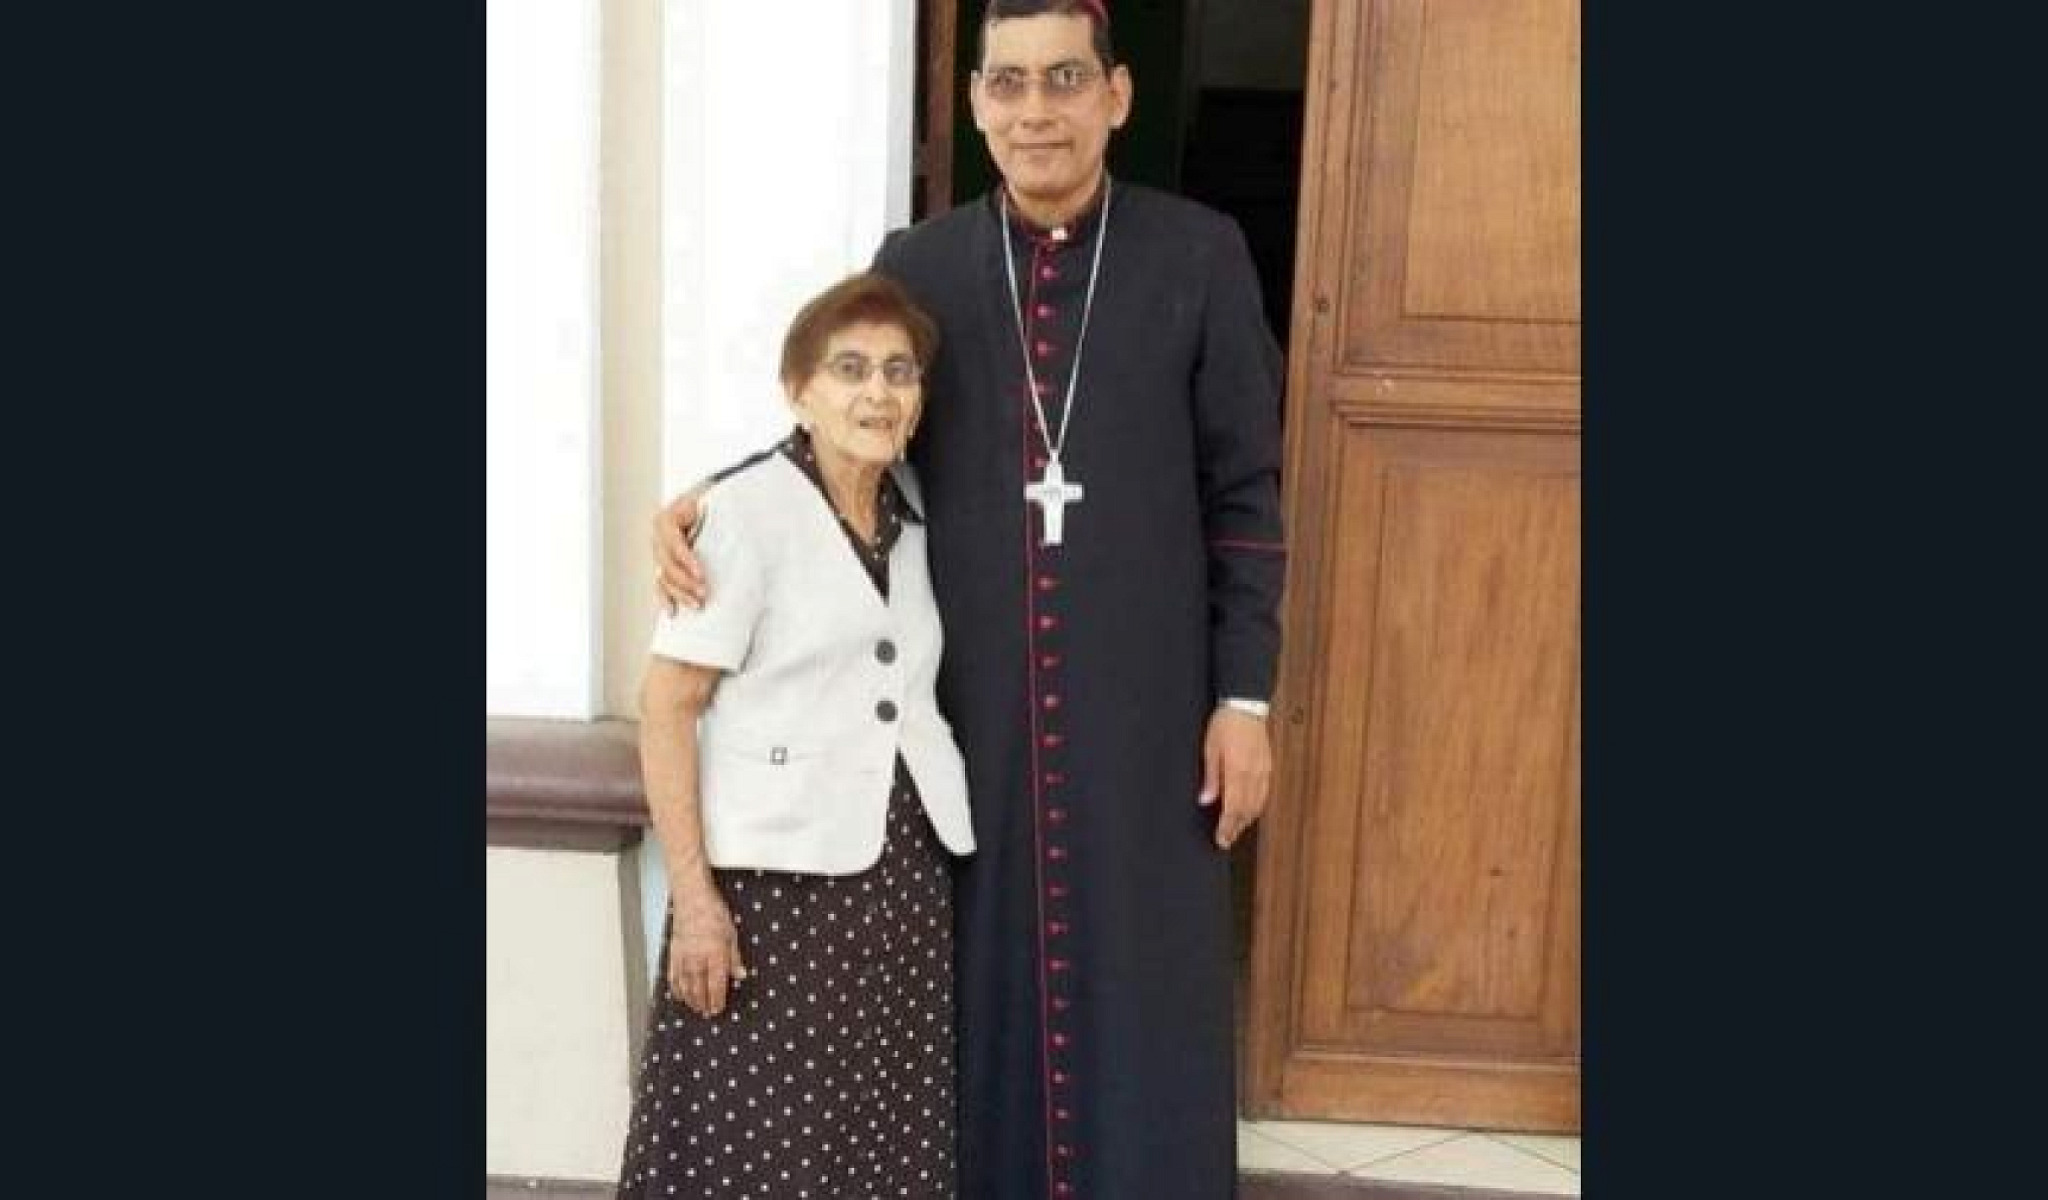 Falleció a sus 103 años doña “Chepita” Pérez, mamá de Monseñor Jorge Solórzano, obispo de la Diócesis de Granada.